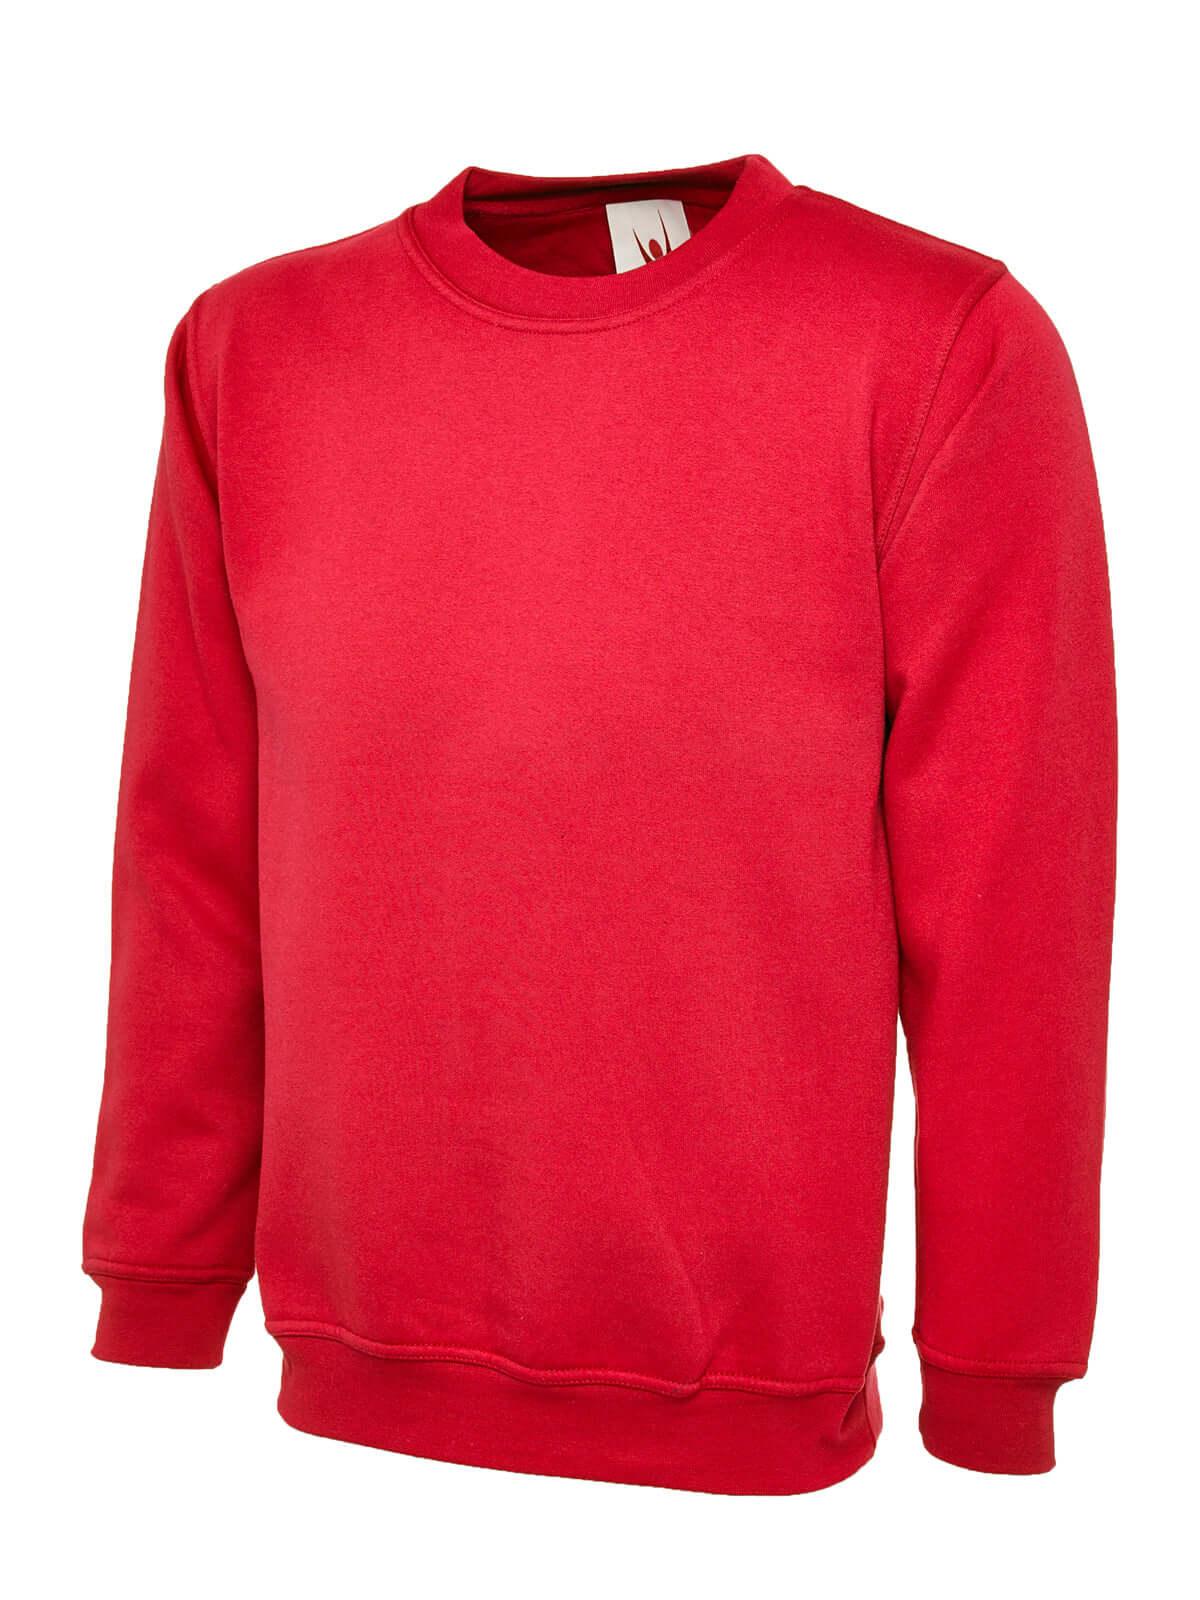 Pegasus Uniform Premium Sweatshirt - Red